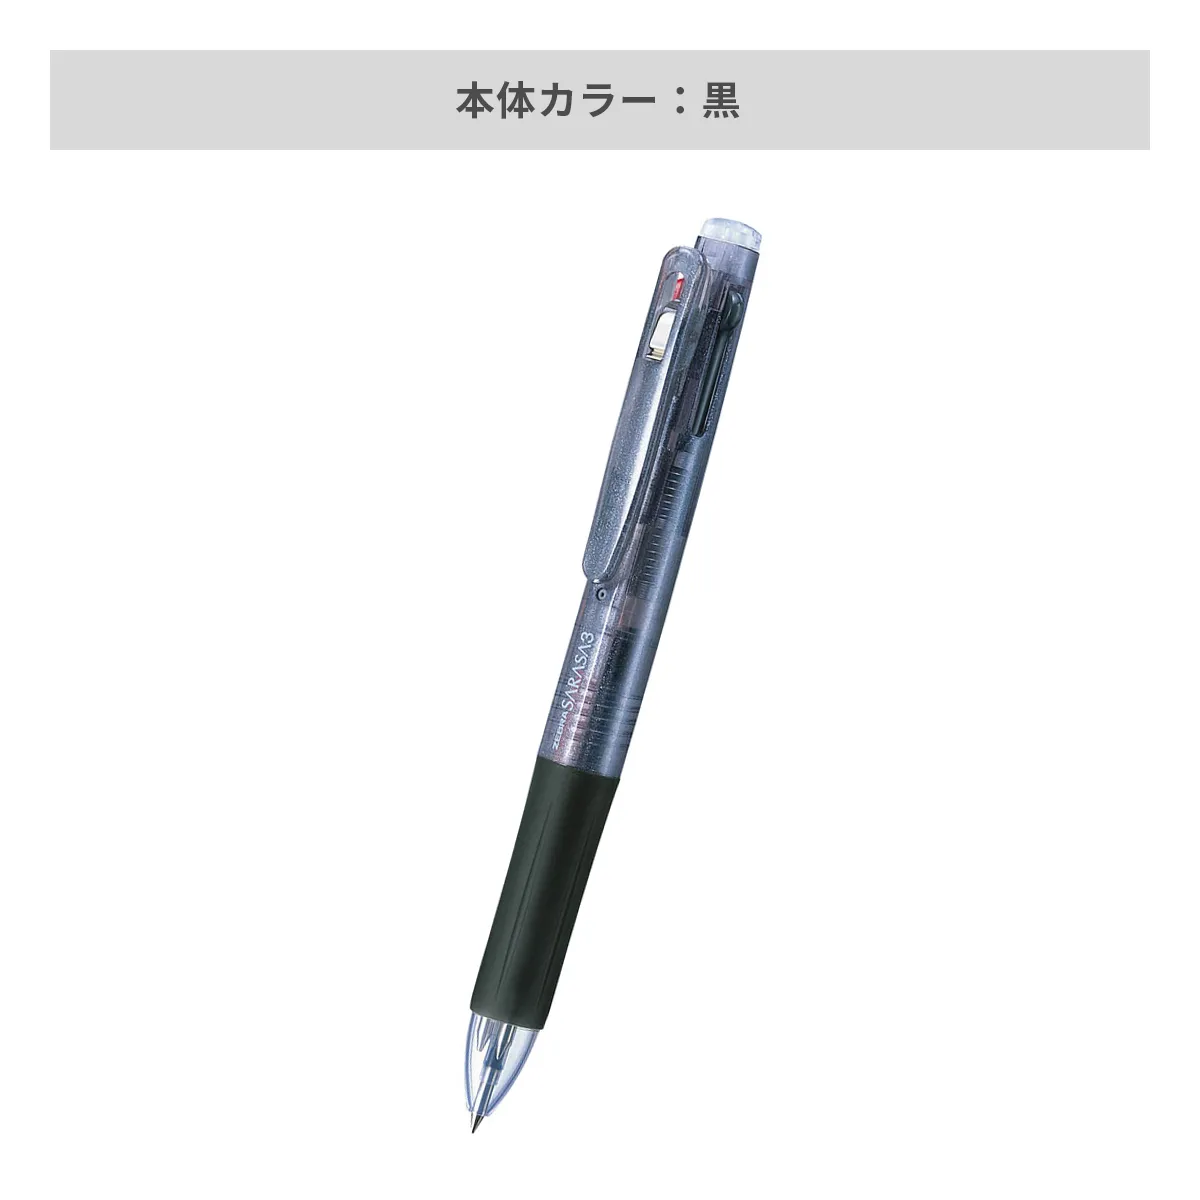 ゼブラ サラサ3 0.5mm 【名入れボールペン / パッド印刷】